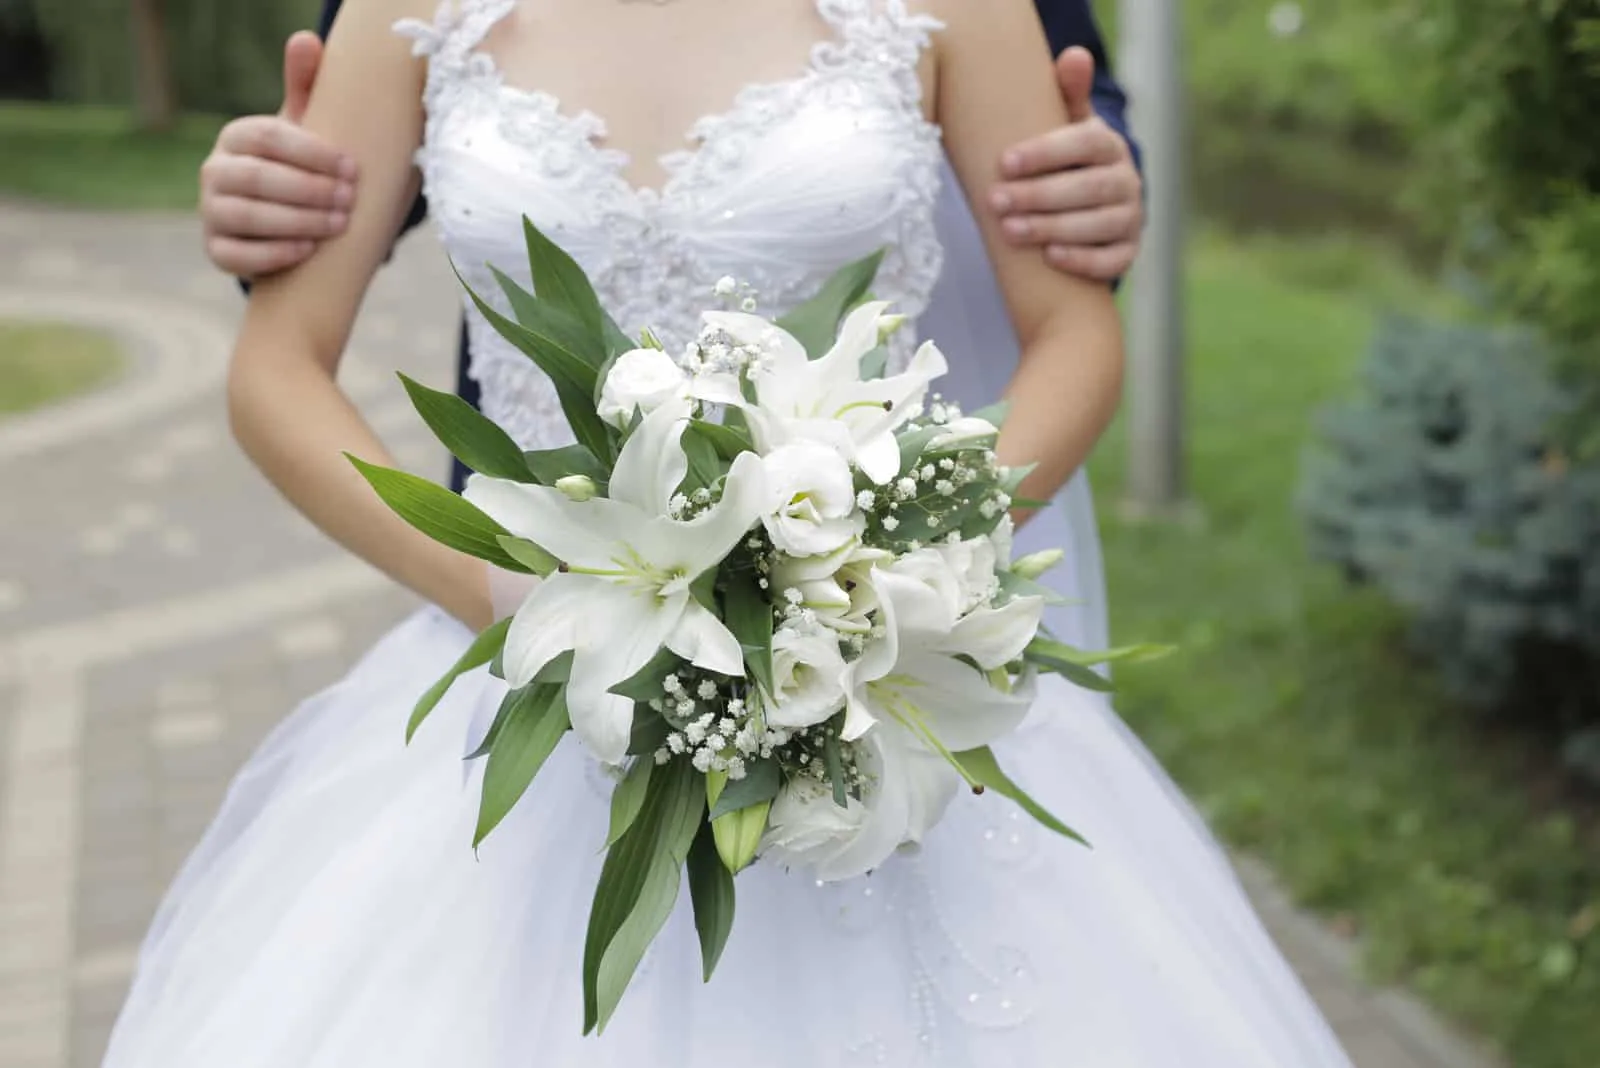 Braut und Bräutigam werden im Park mit einem Strauß weißer Lilien fotografiert